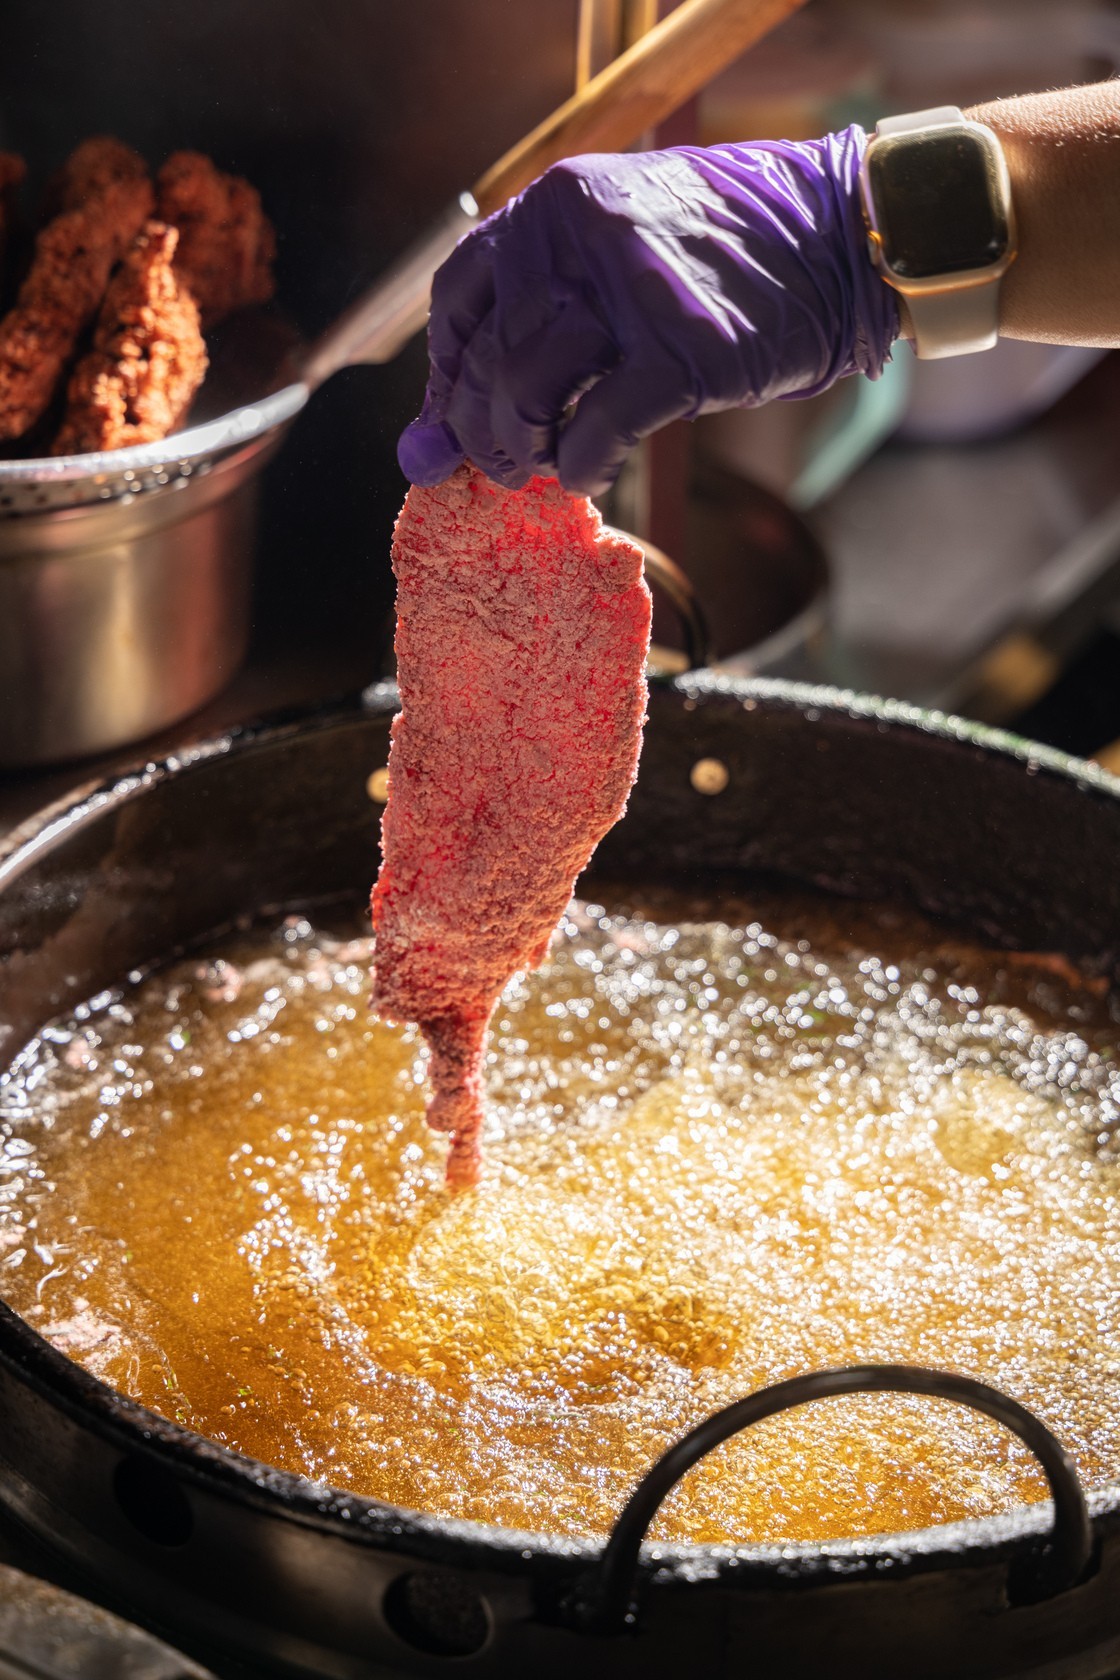 第一代創辦人「勇伯」就傳承下來的紅燒肉炸法，溫度和時間都有一定的控管。